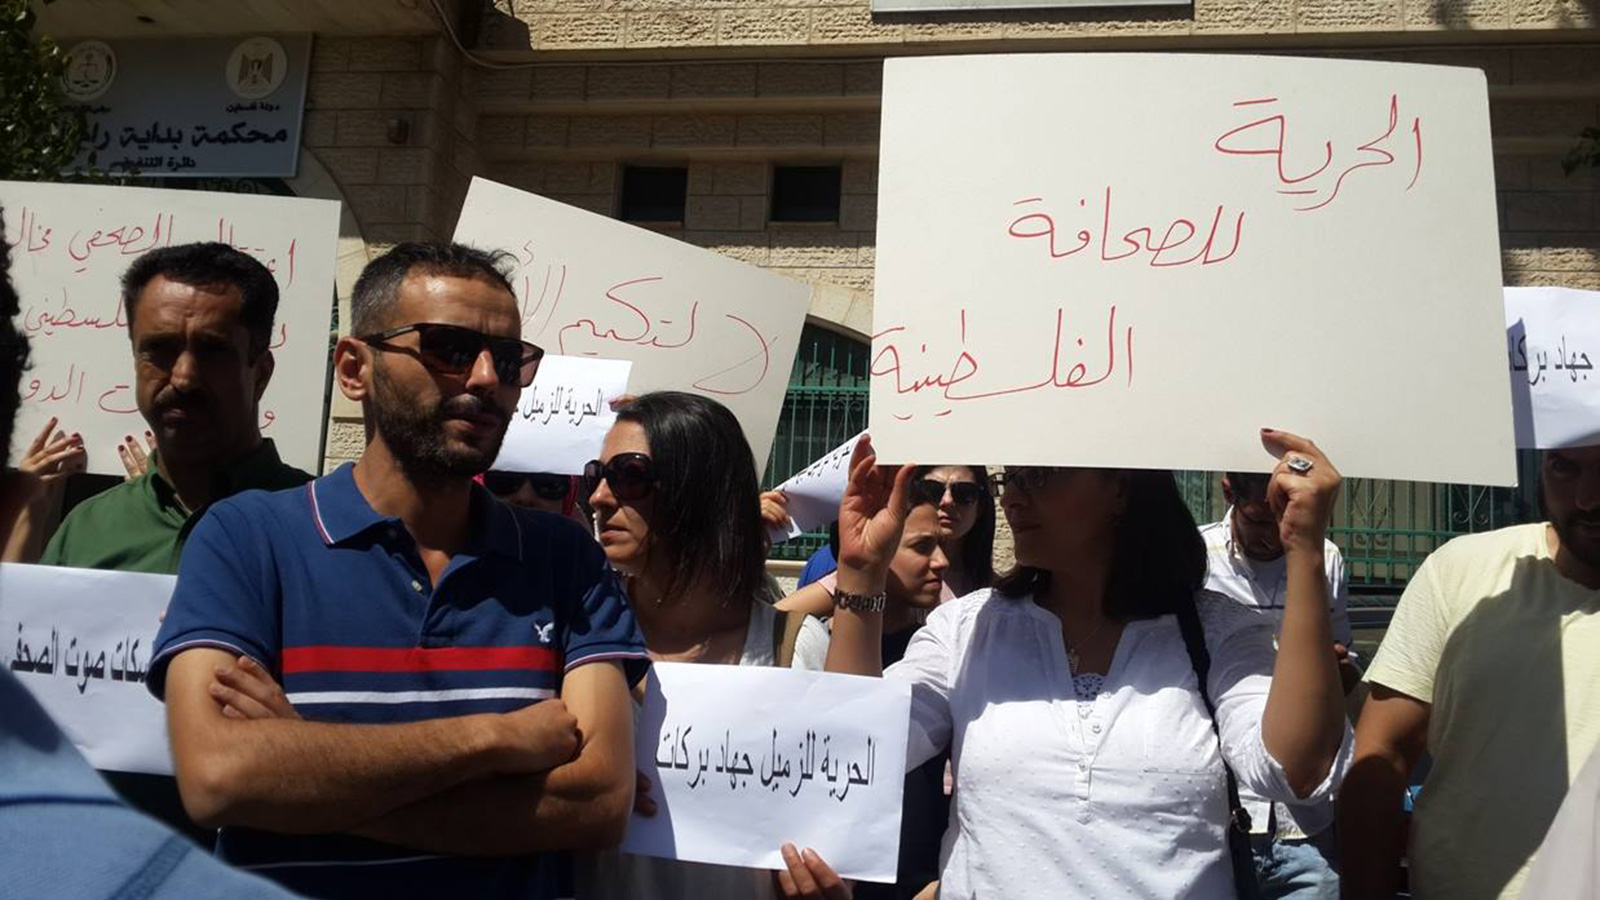  صحفيون فلسطينيون يعتصمون أمام نيابة رام الله محتجين على اعتقال أحد زملائهم (الجزيرة)